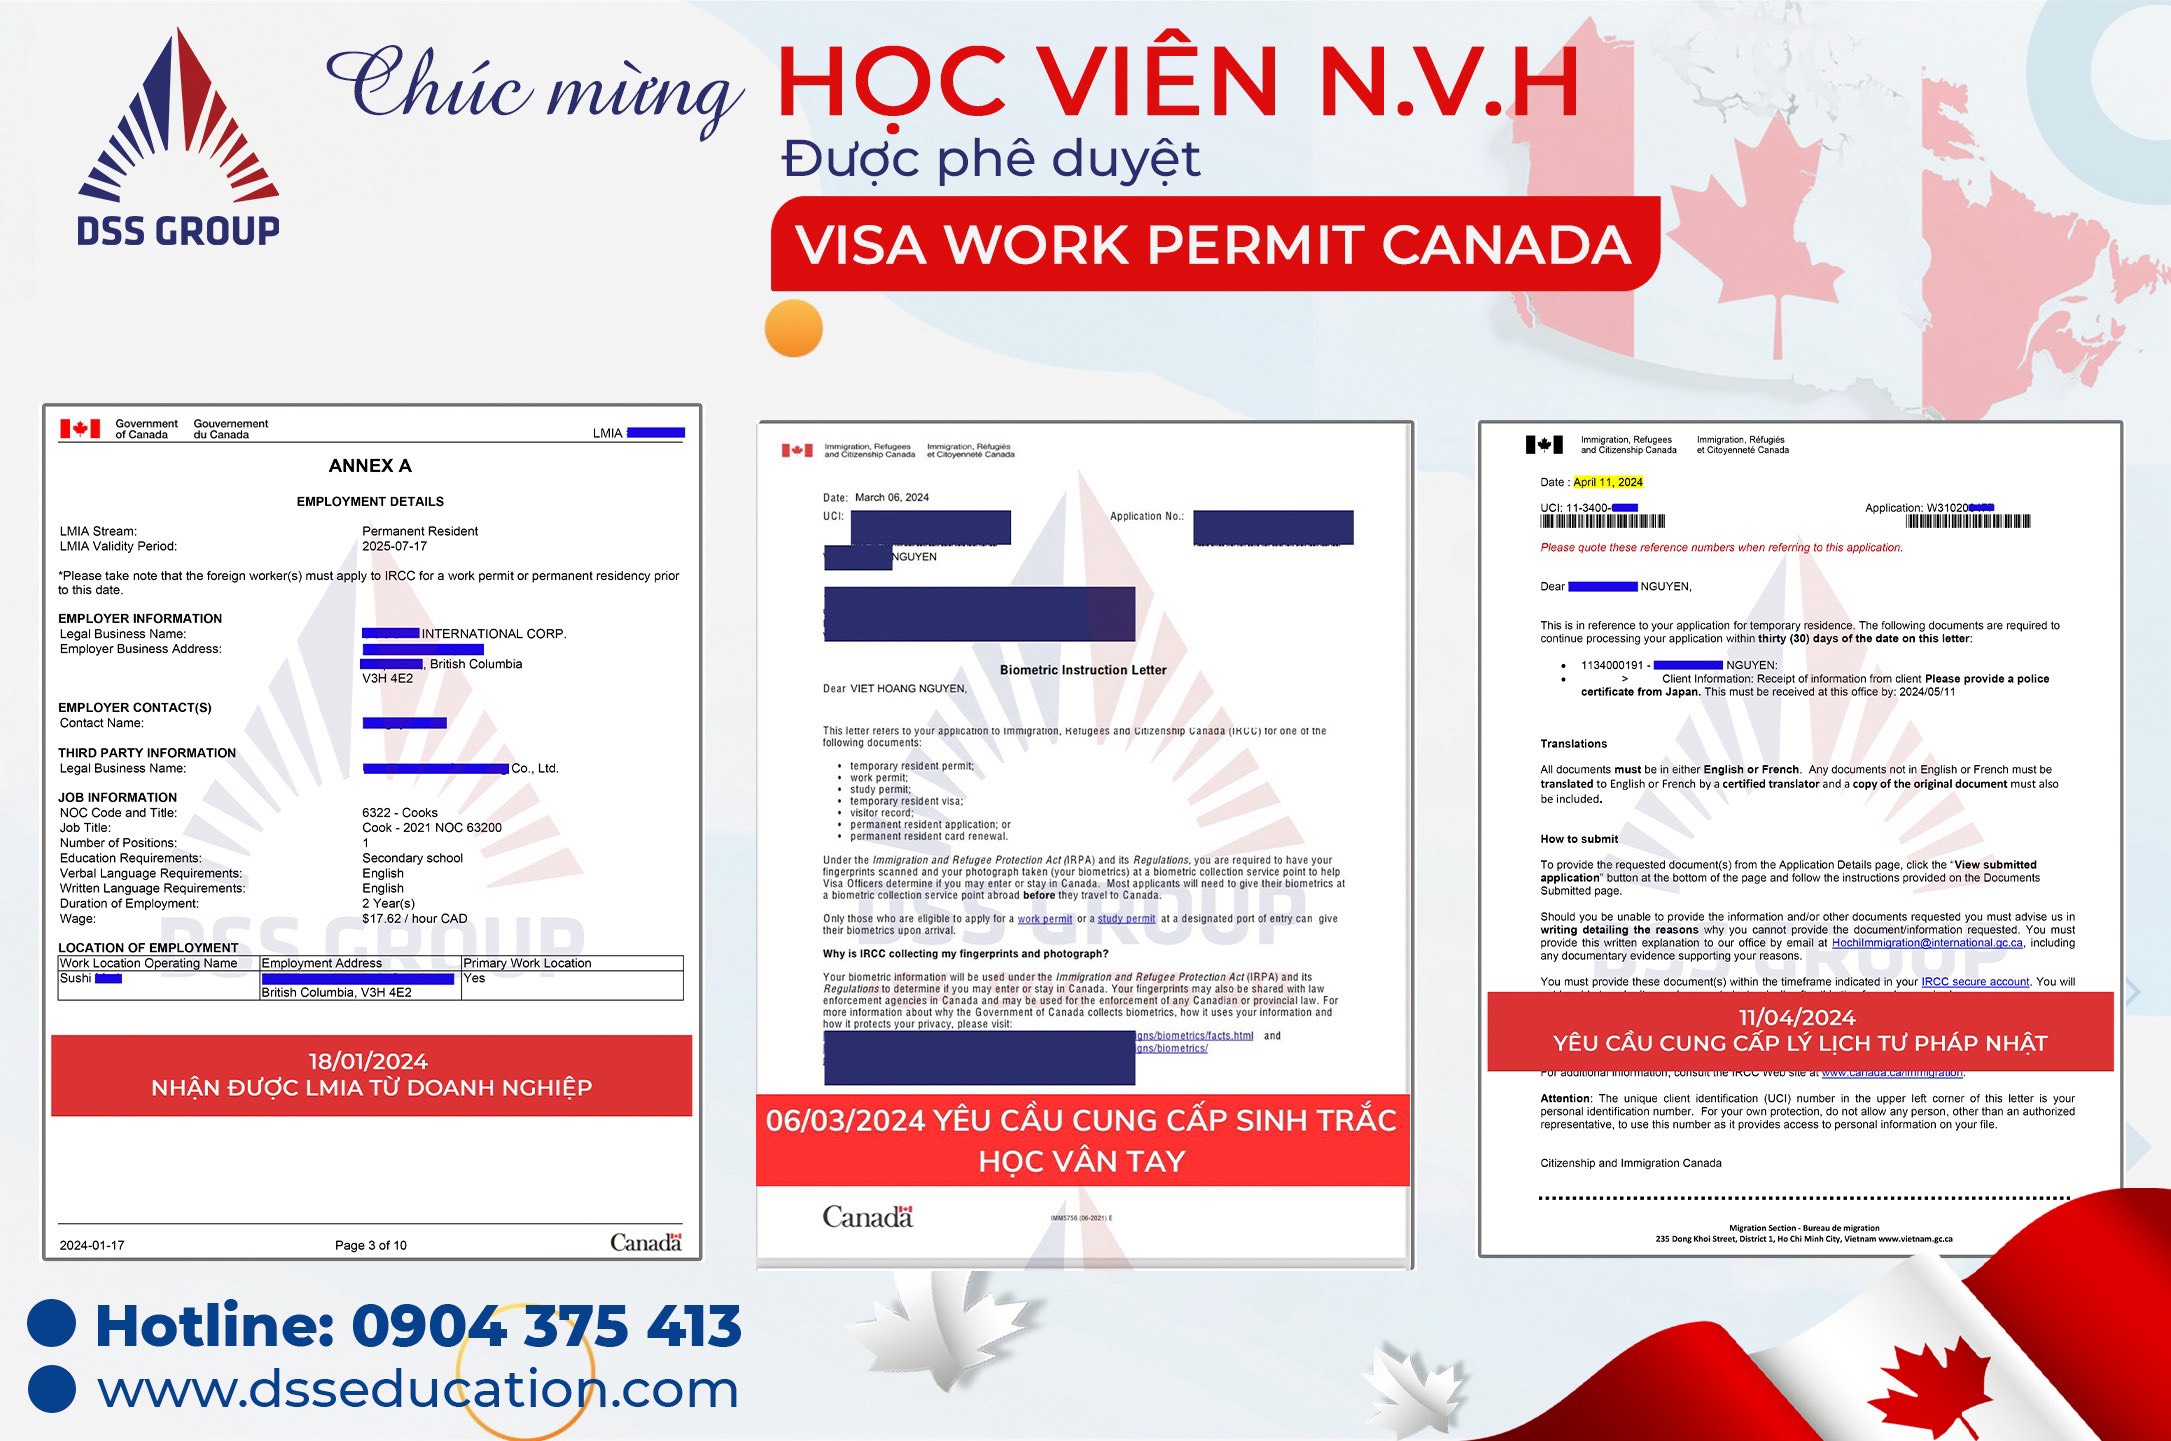 Quá trình xin visa Work Permit của N.V.H 